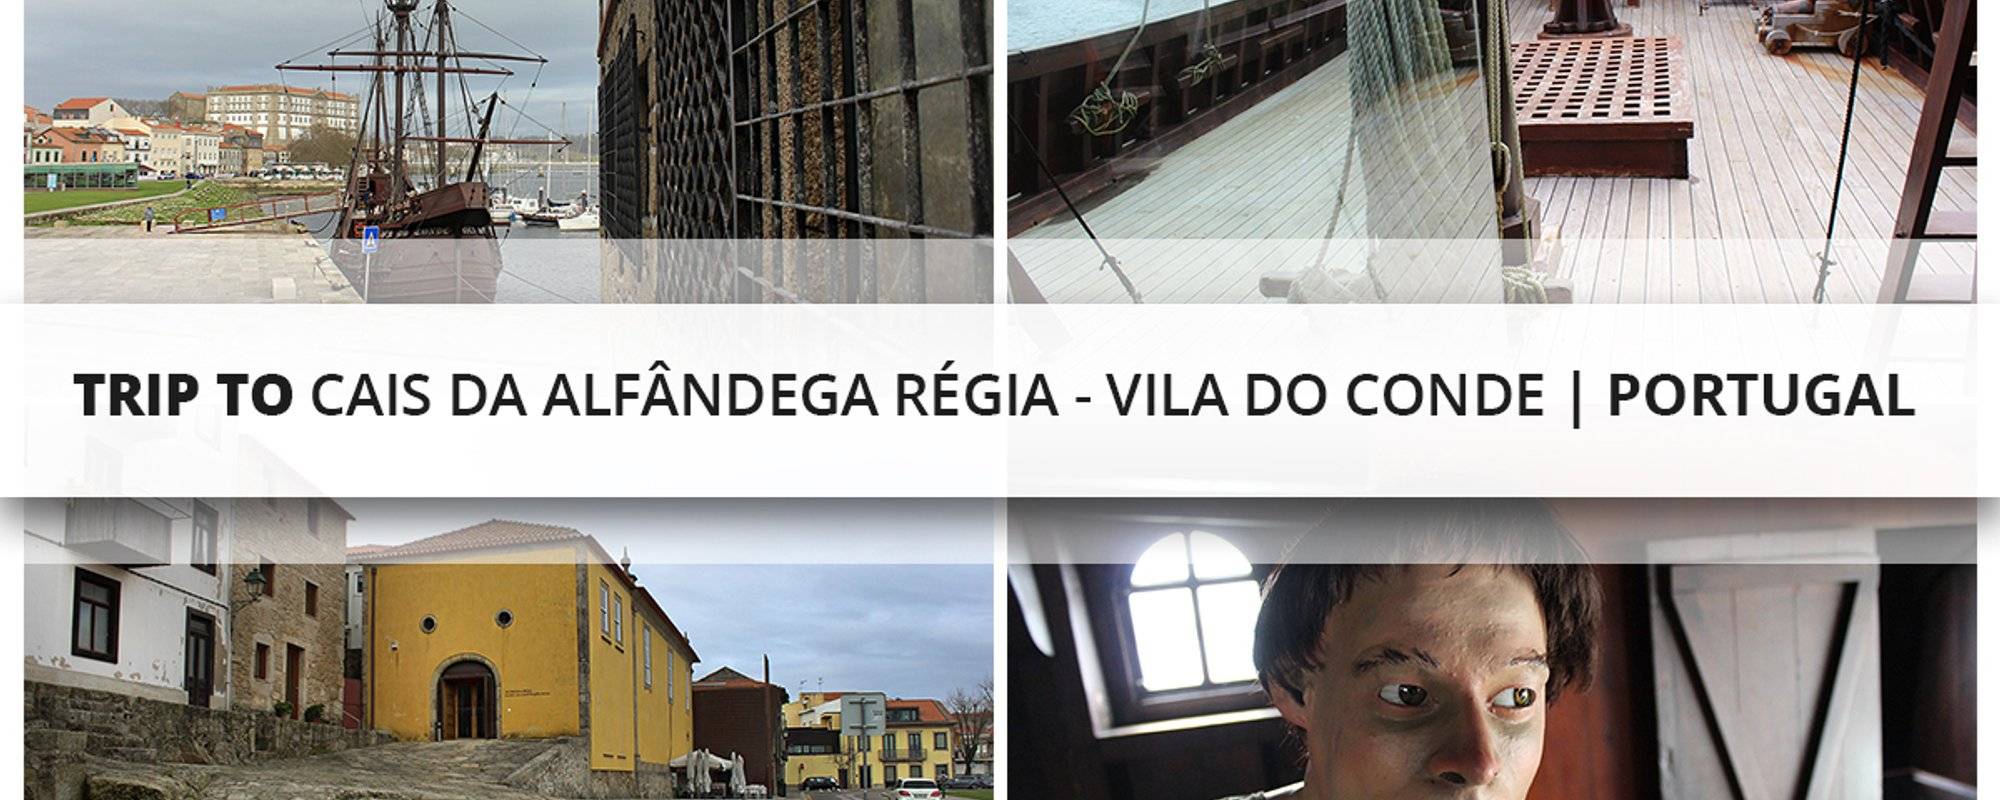 Trip to Cais da Alfândega Régia - Vila do Conde | Portugal